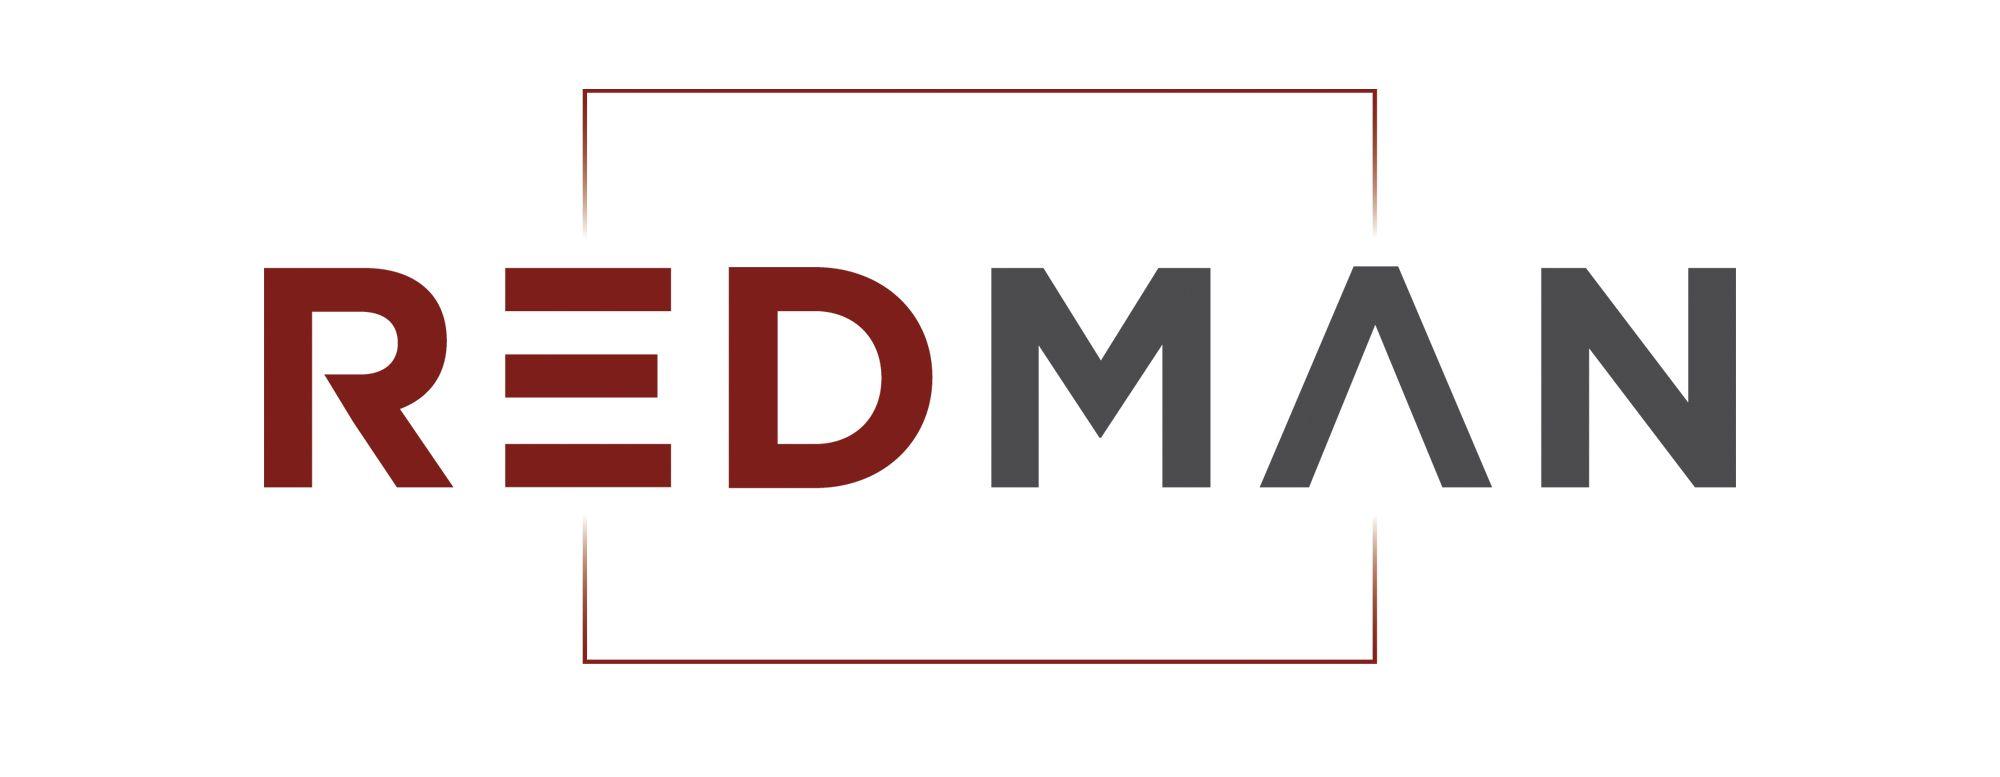 Red Man Logo - REDMAN Les partenaires l'immobilier Marseille